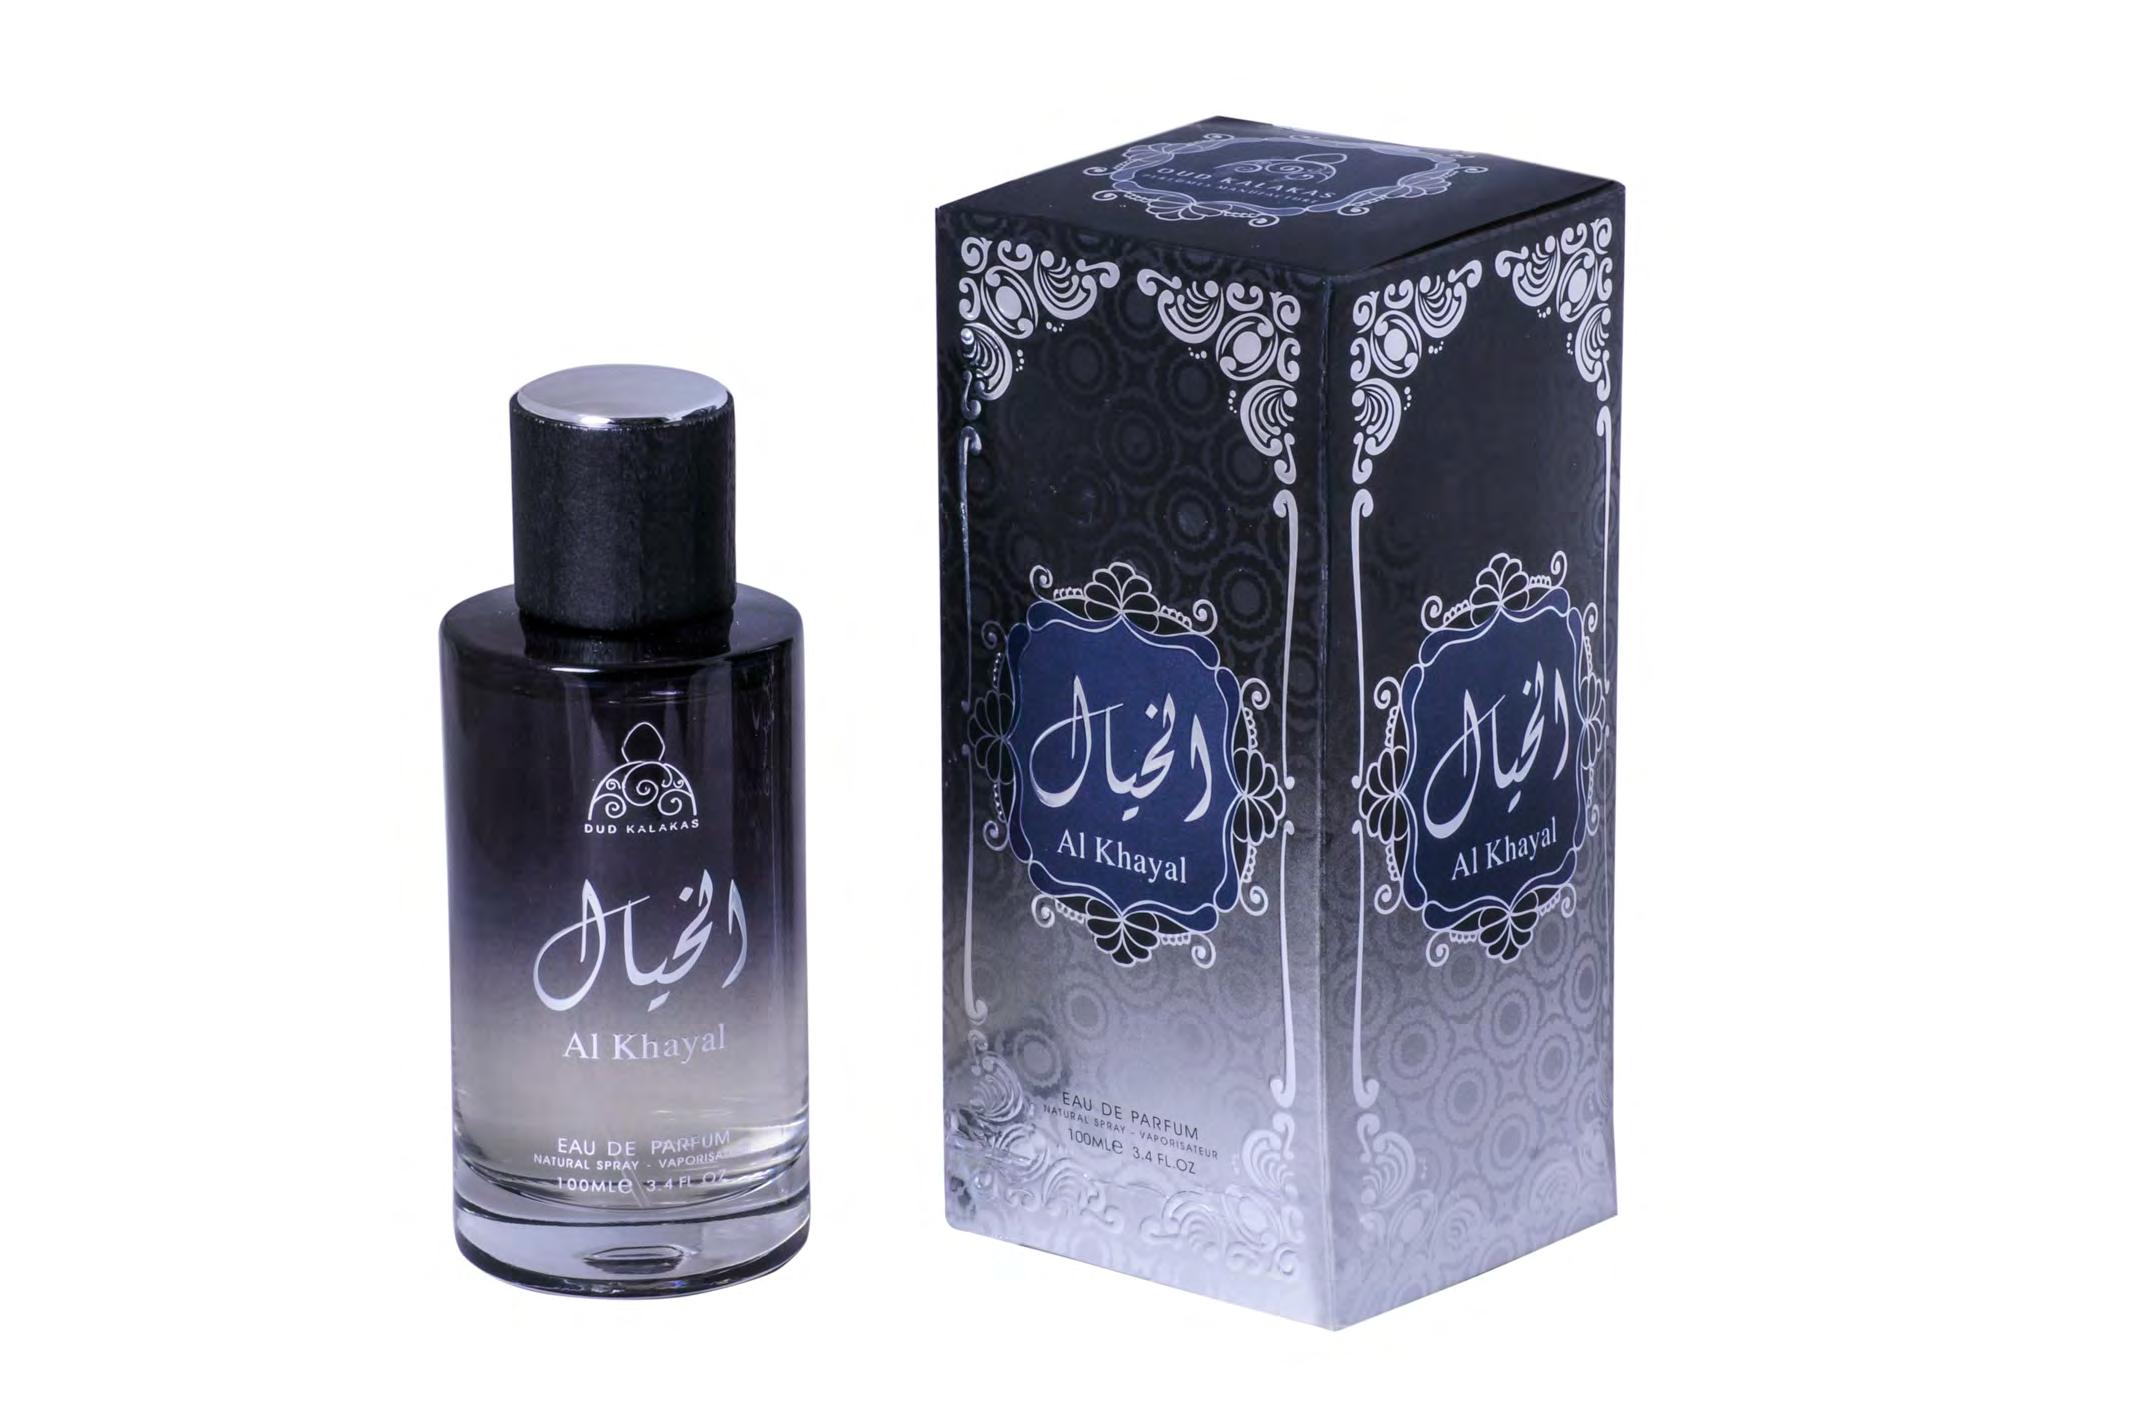 AL KHAYAL/EAU DE PARFUM 100ML – Oud KalaKas perfumes